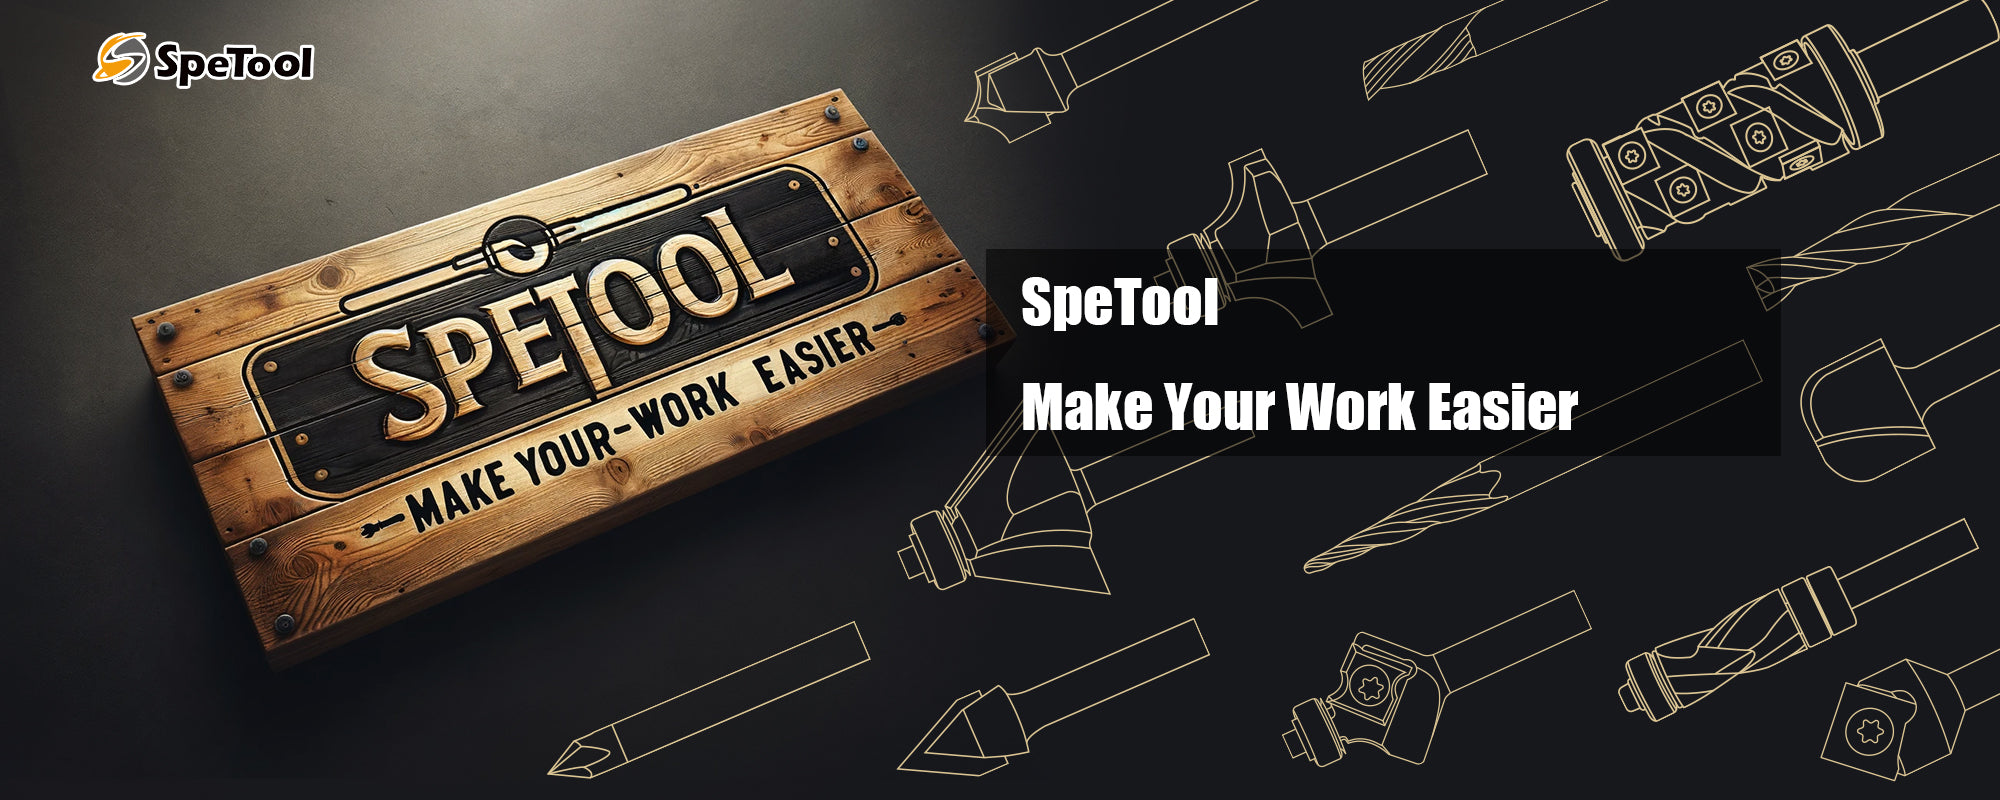 SpeTool make your work easier